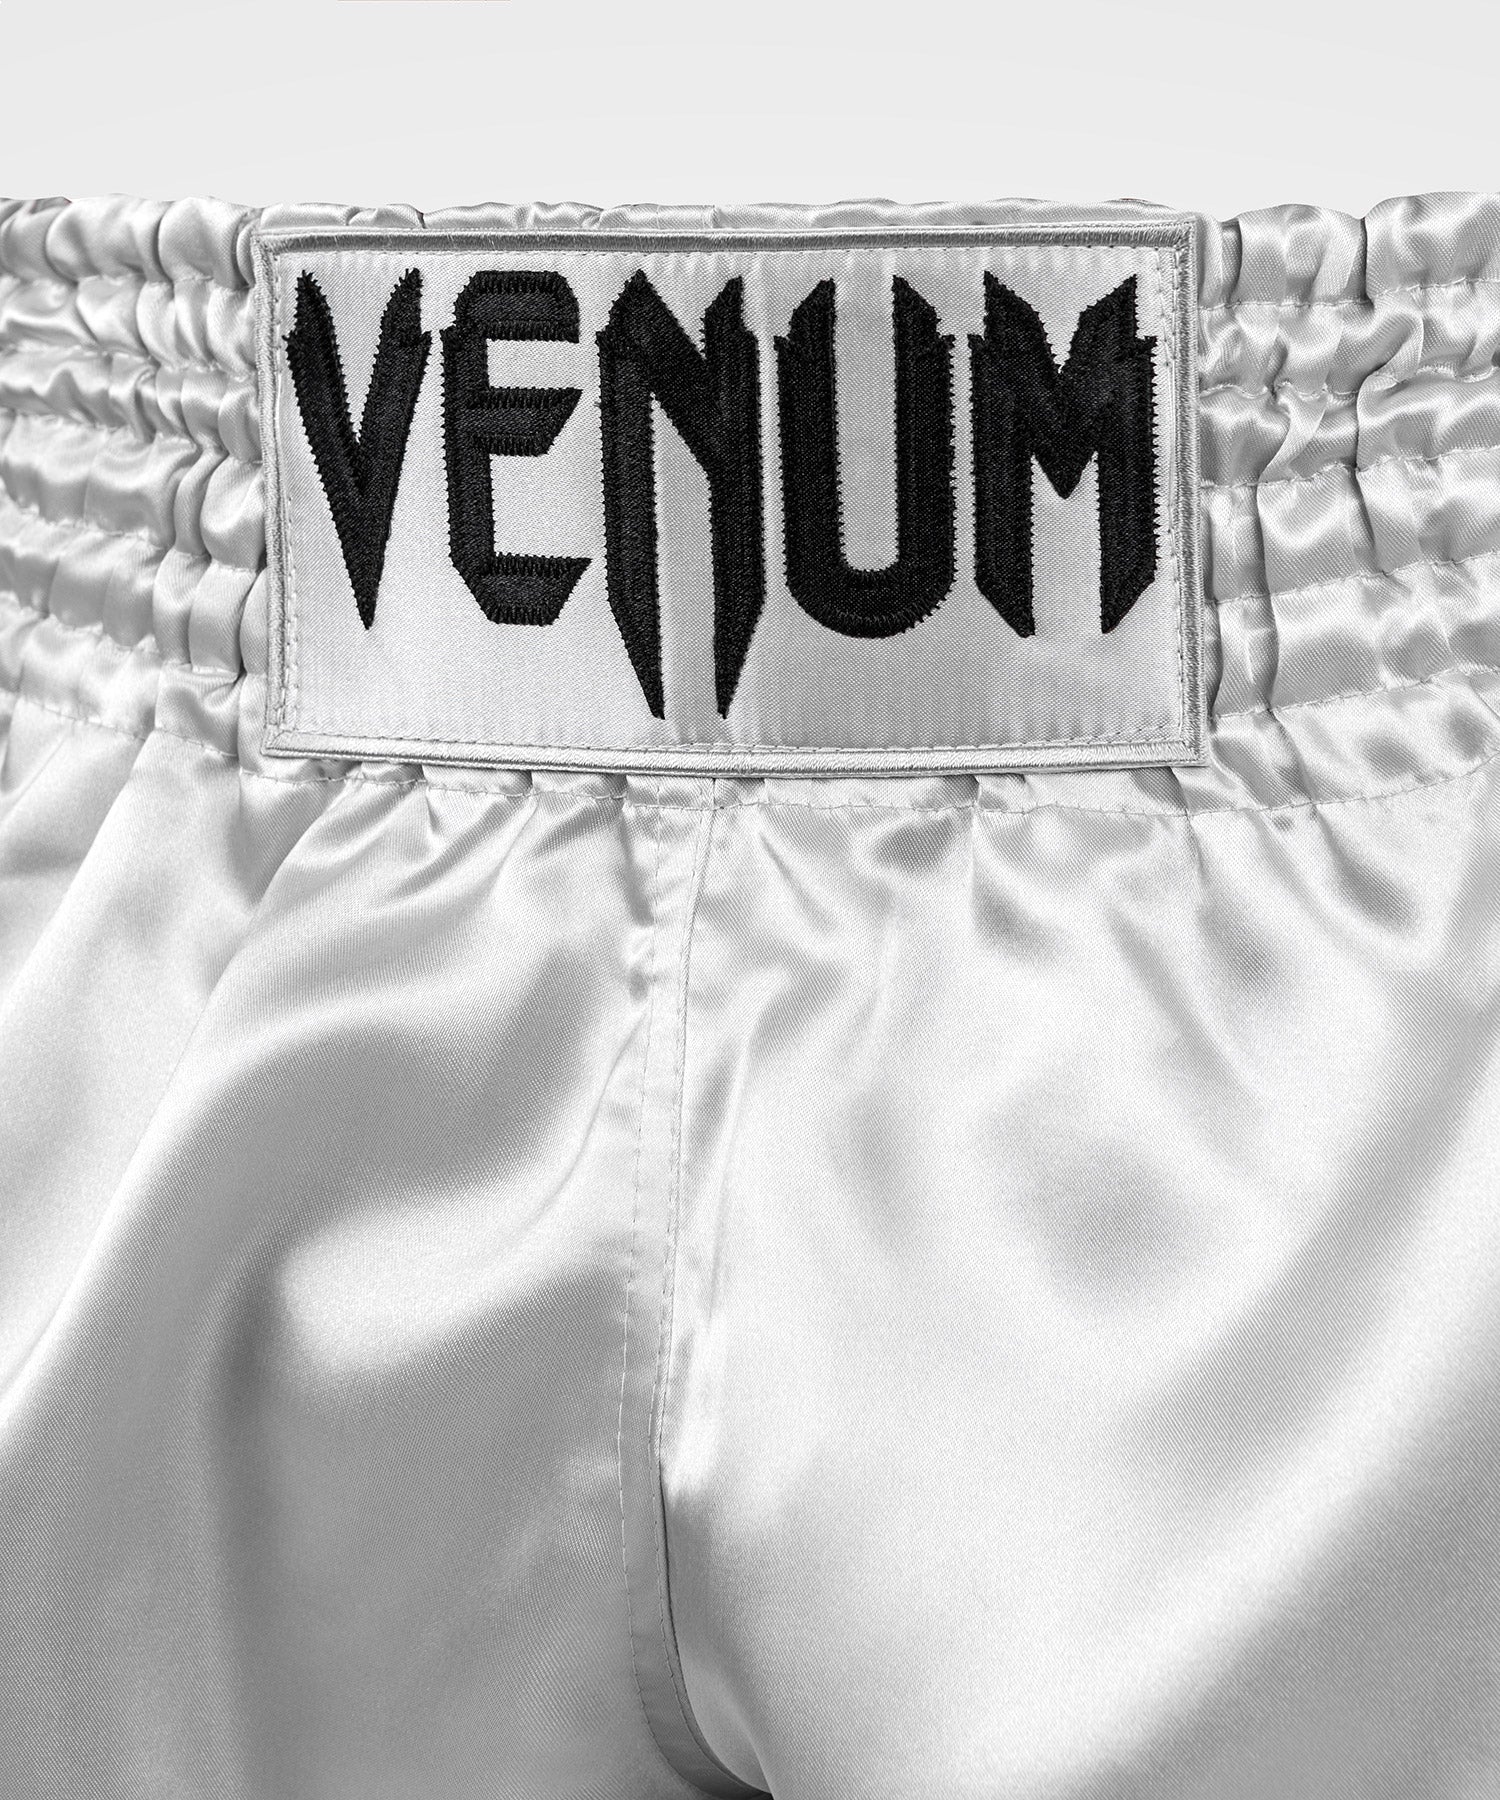 Venum Classic Muay Thai Short - Noir/Or